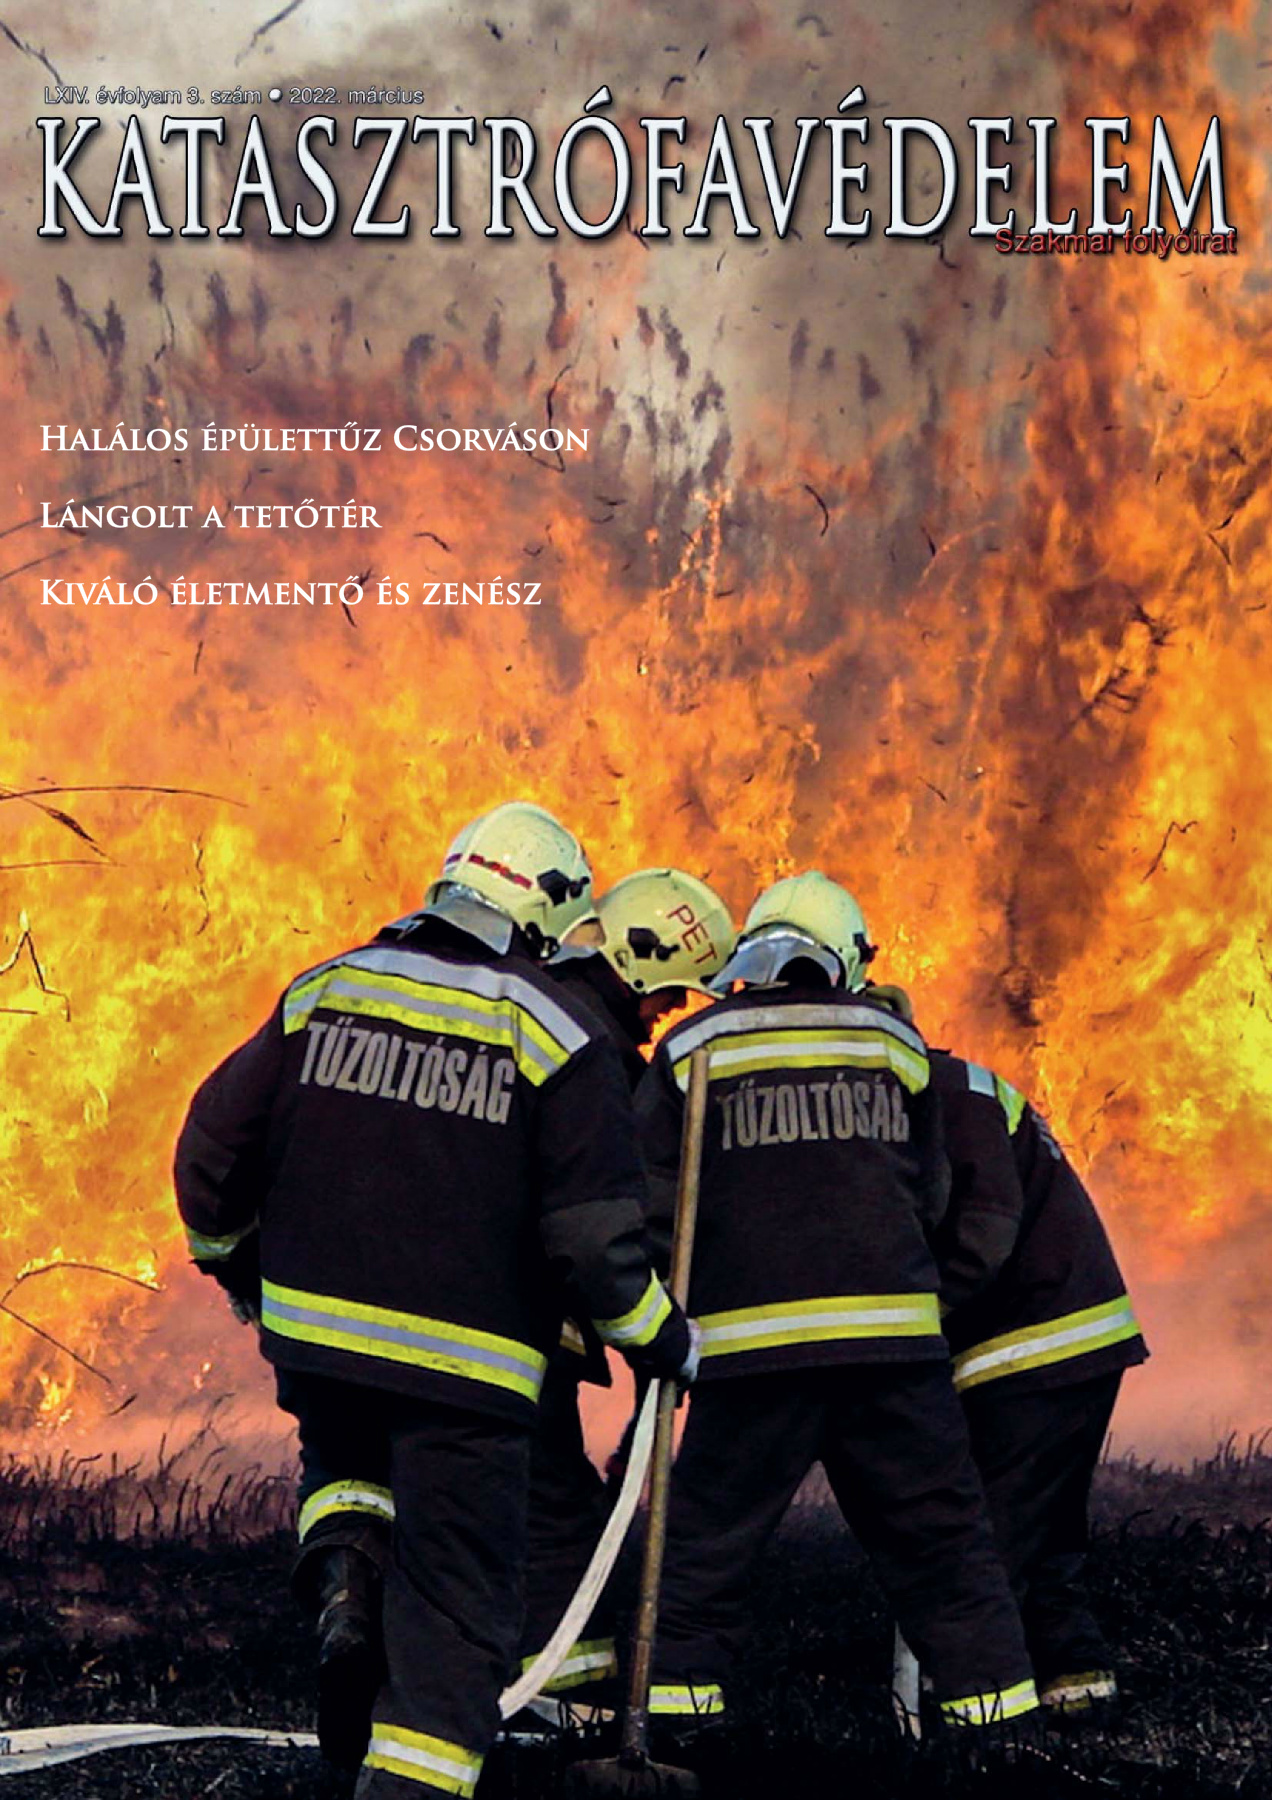 A Katasztrófavédelem magazin LXIV. évfolyam 03. szám megtekintése